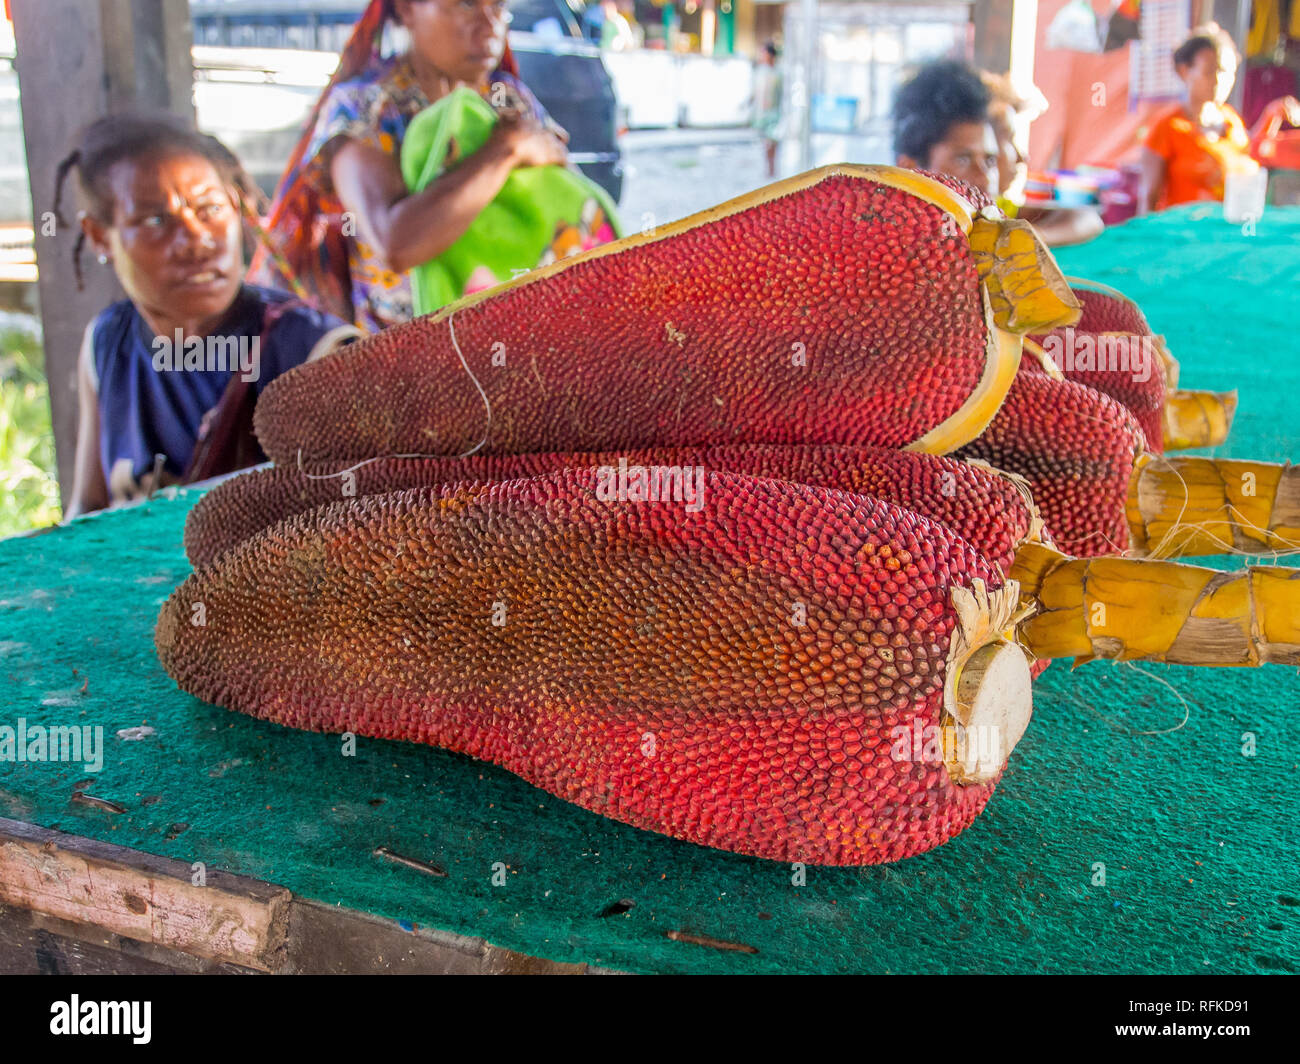 Dekai, Indonesien - 21. Januar 2015: Rote Frucht Buah Merah Papua. Wundersame Heilung für alle Krankheiten der zivilisierten Welt. Stockfoto